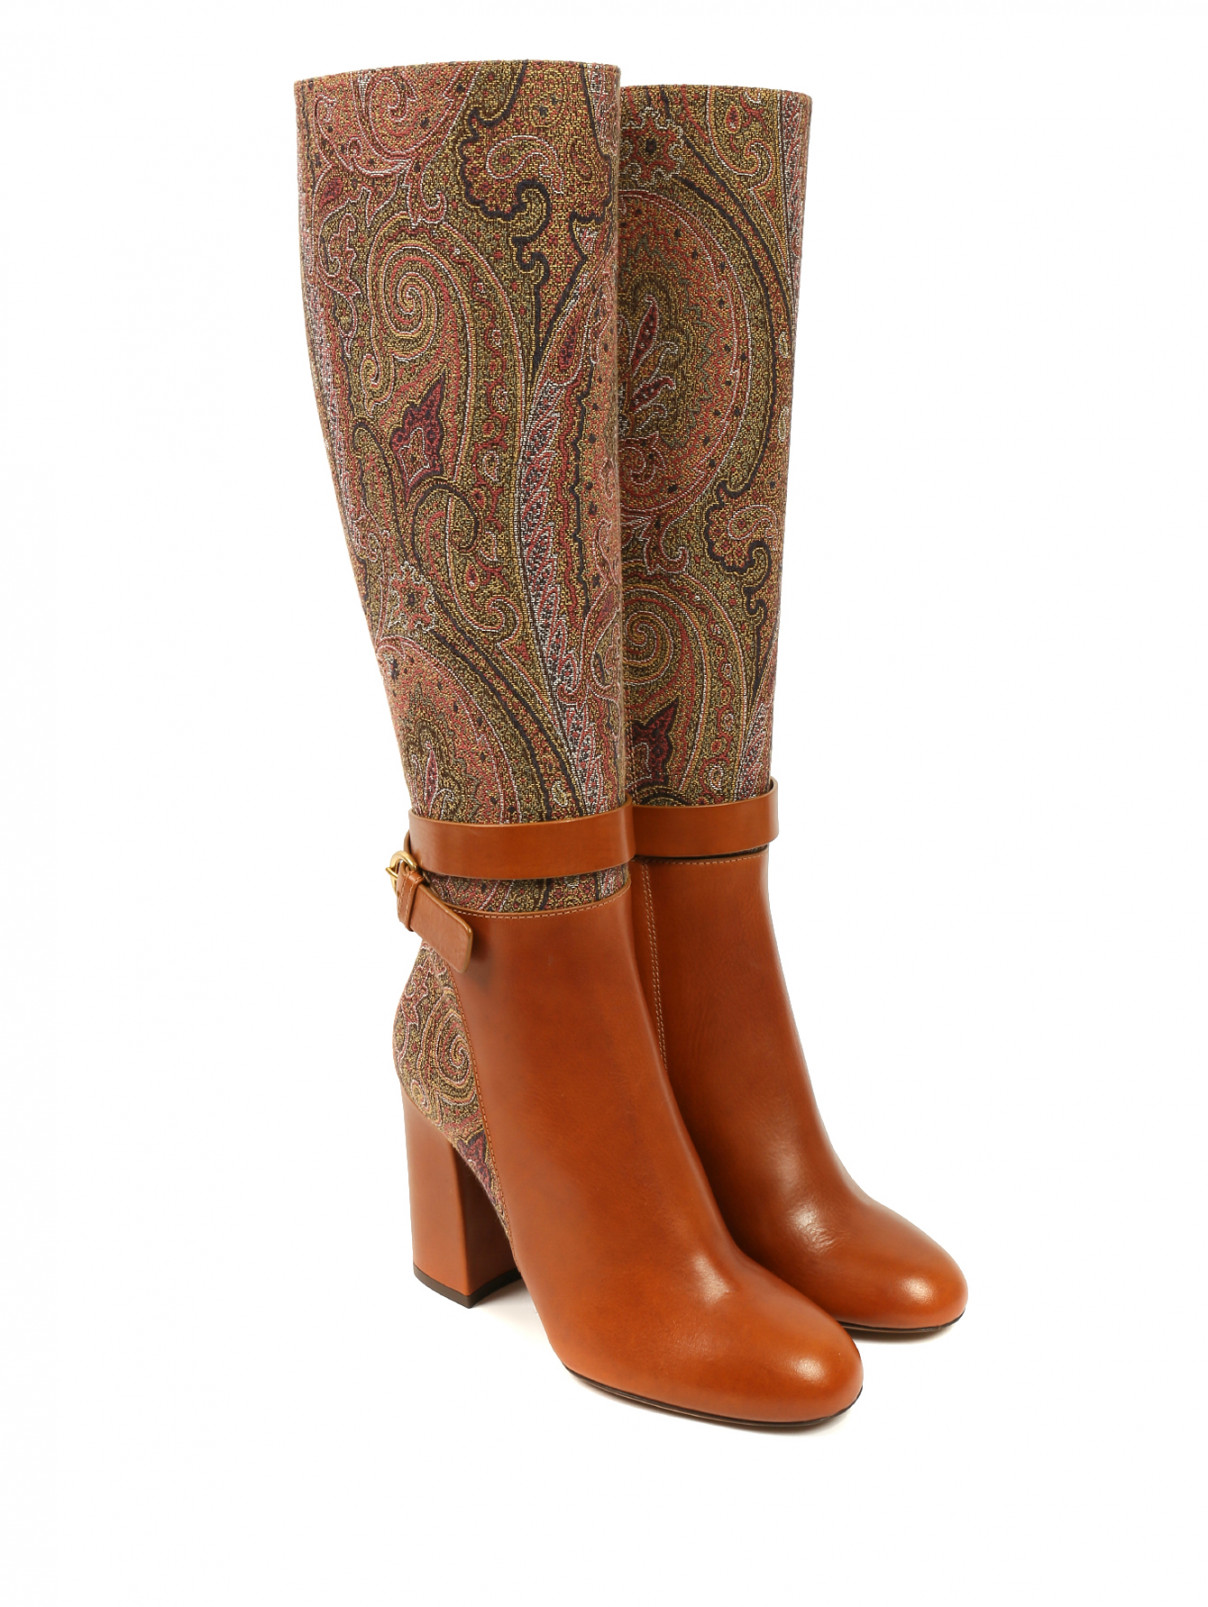 Кожаные сапоги на устойчивом каблуке с узором "пейсли" Etro  –  Общий вид  – Цвет:  Коричневый